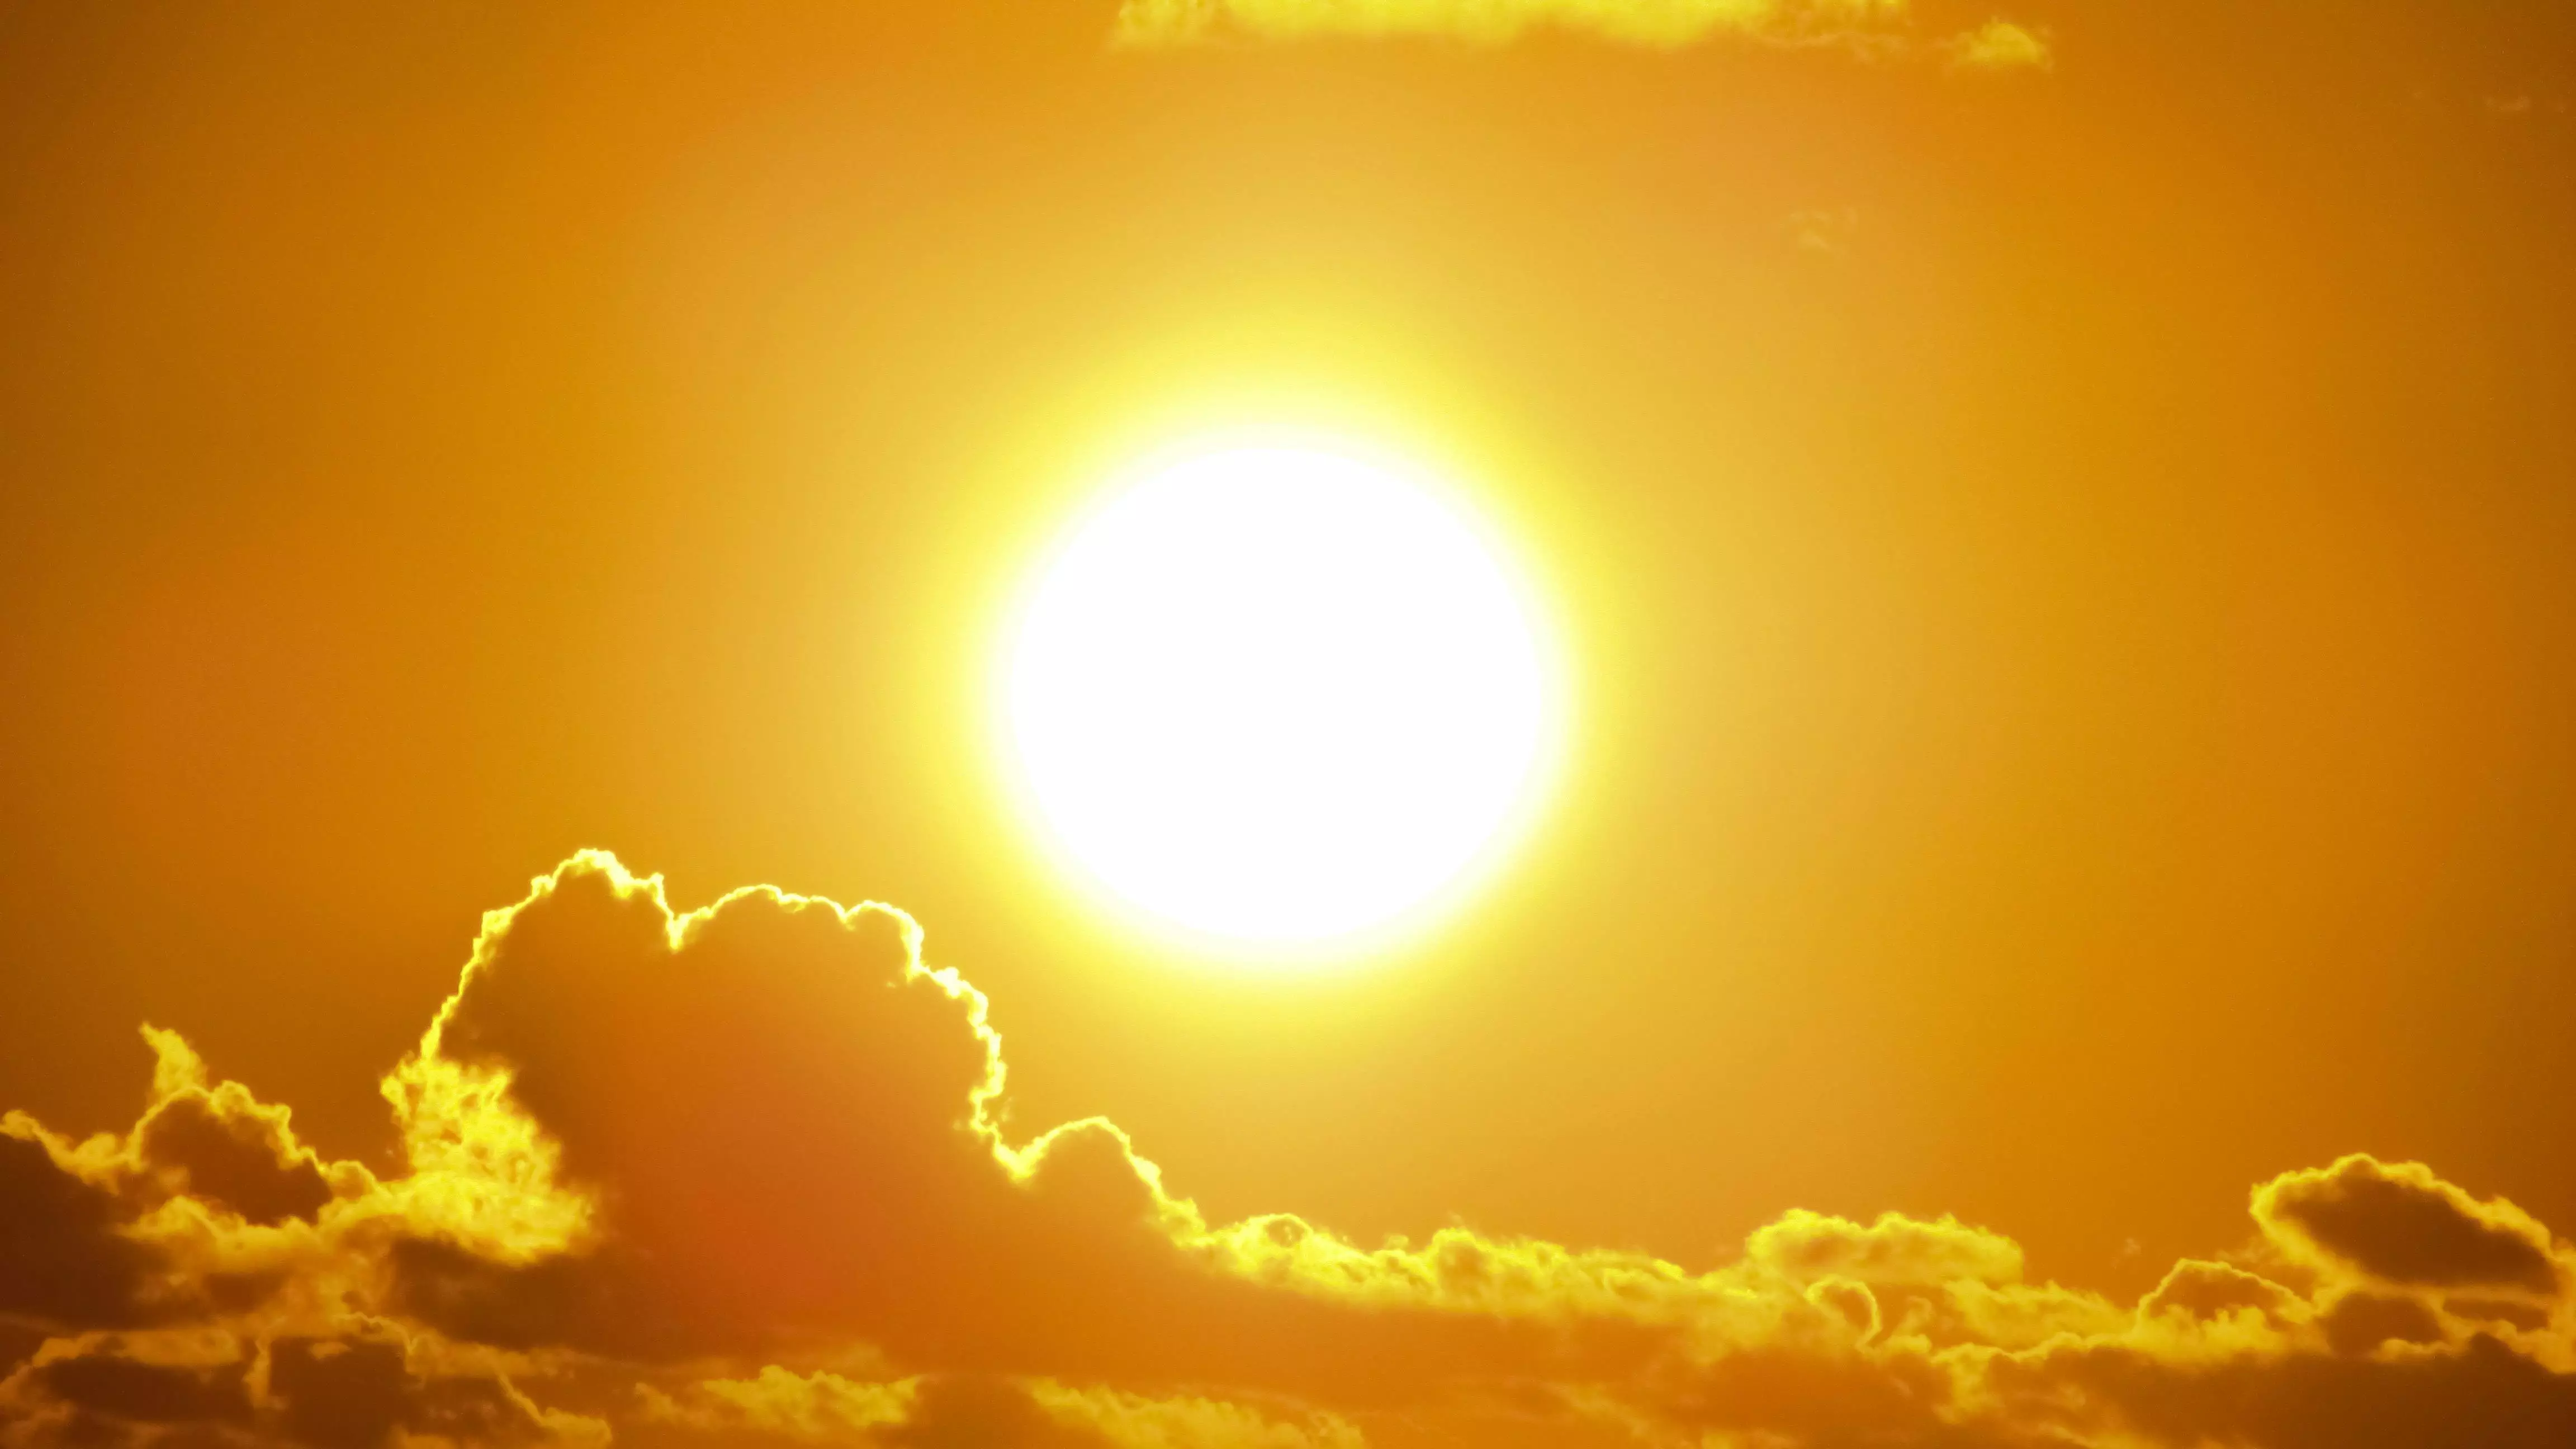 38 градусов жары ожидается в одном из мегаполисов Казахстана: прогноз погоды на сегодня, 10 июня